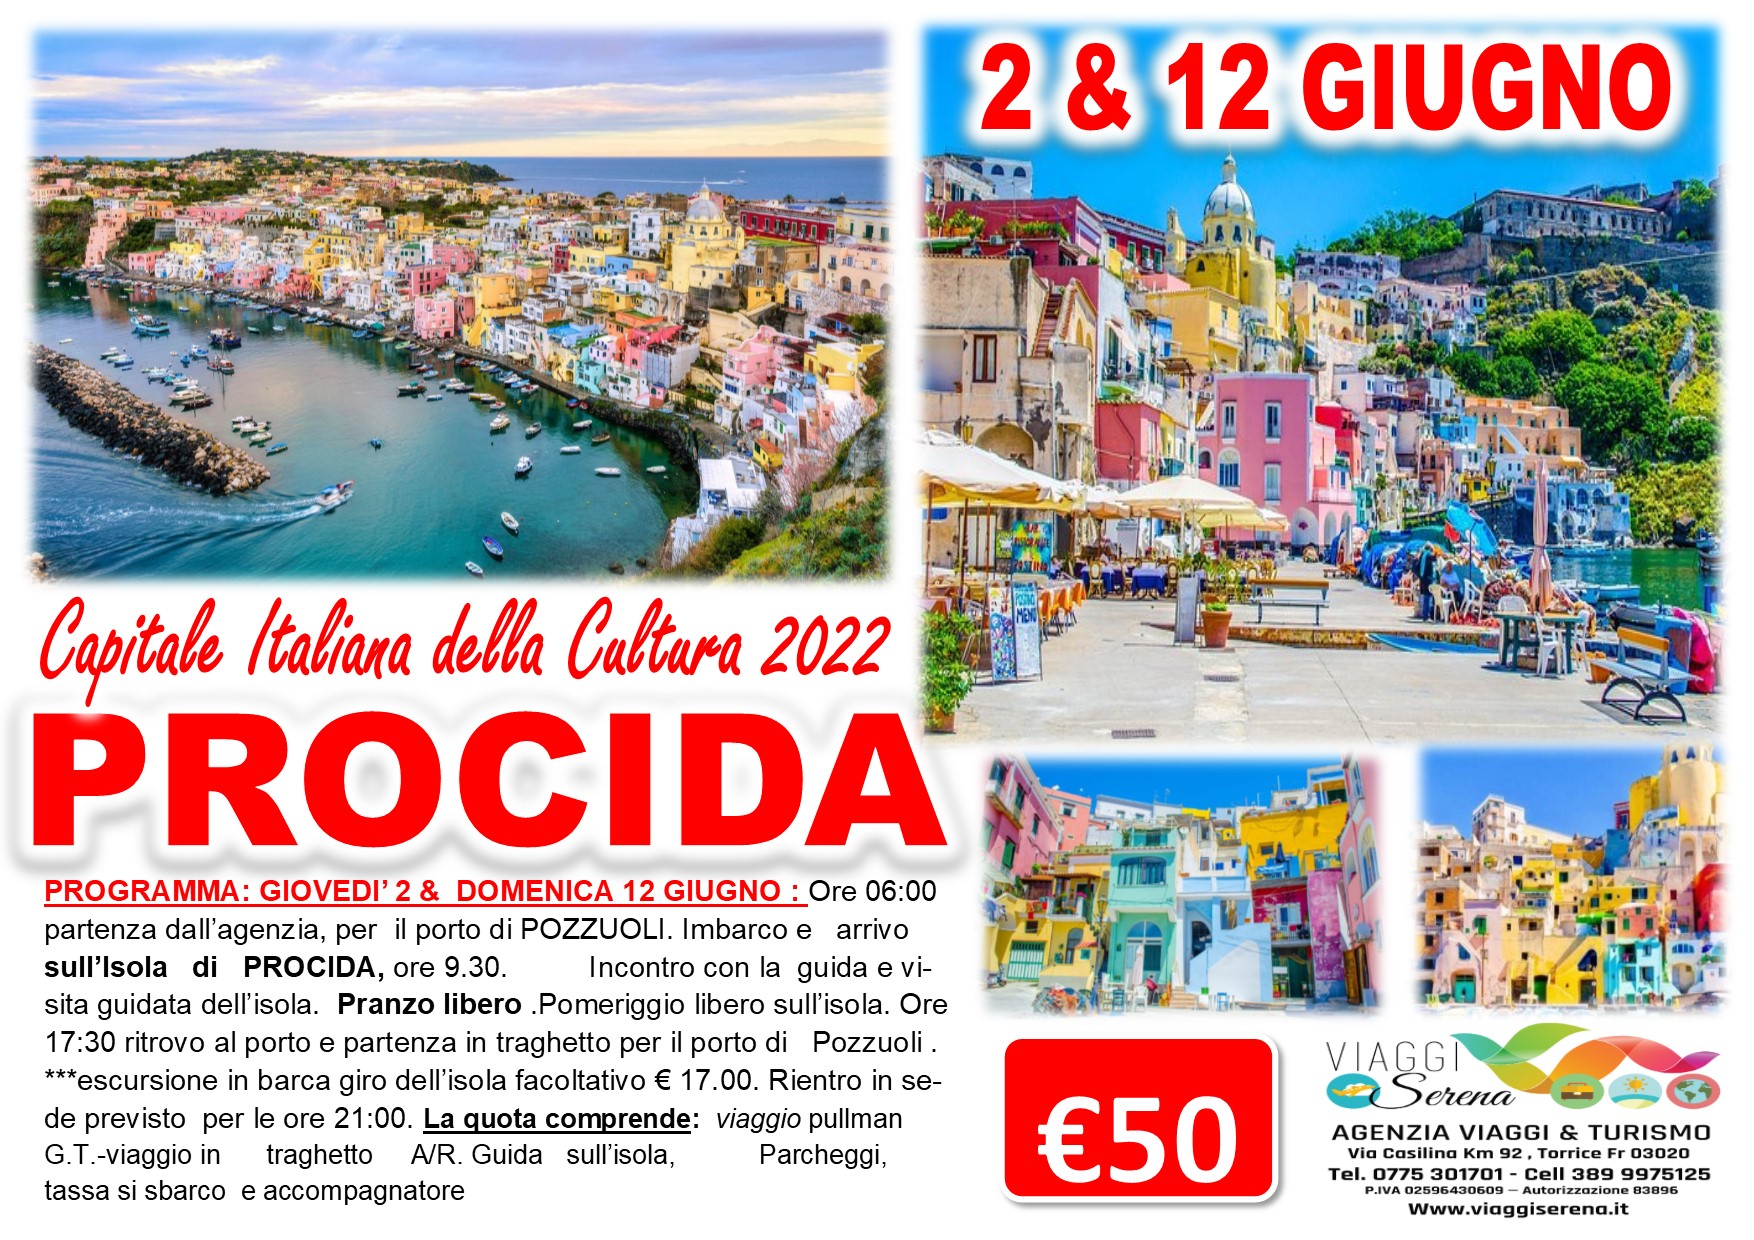 Viaggi di Gruppo: Isola di Procida “Capitale della Cultura” 2 Giugno  €50,00